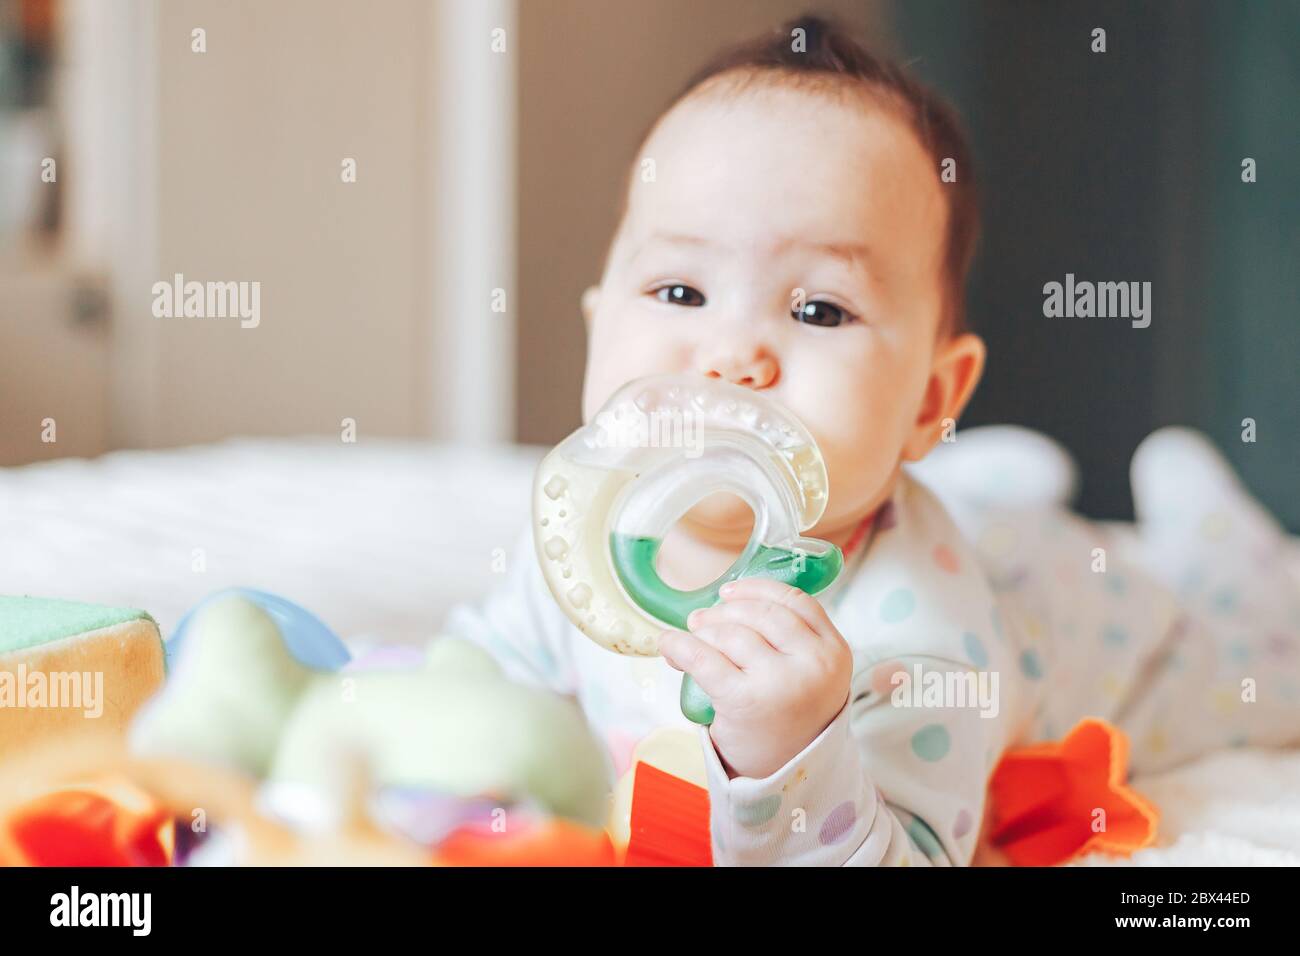 Portrait d'un bébé, d'un garçon ou d'une fille de 6 mois, jouant avec un jouet de dentition. Banque D'Images